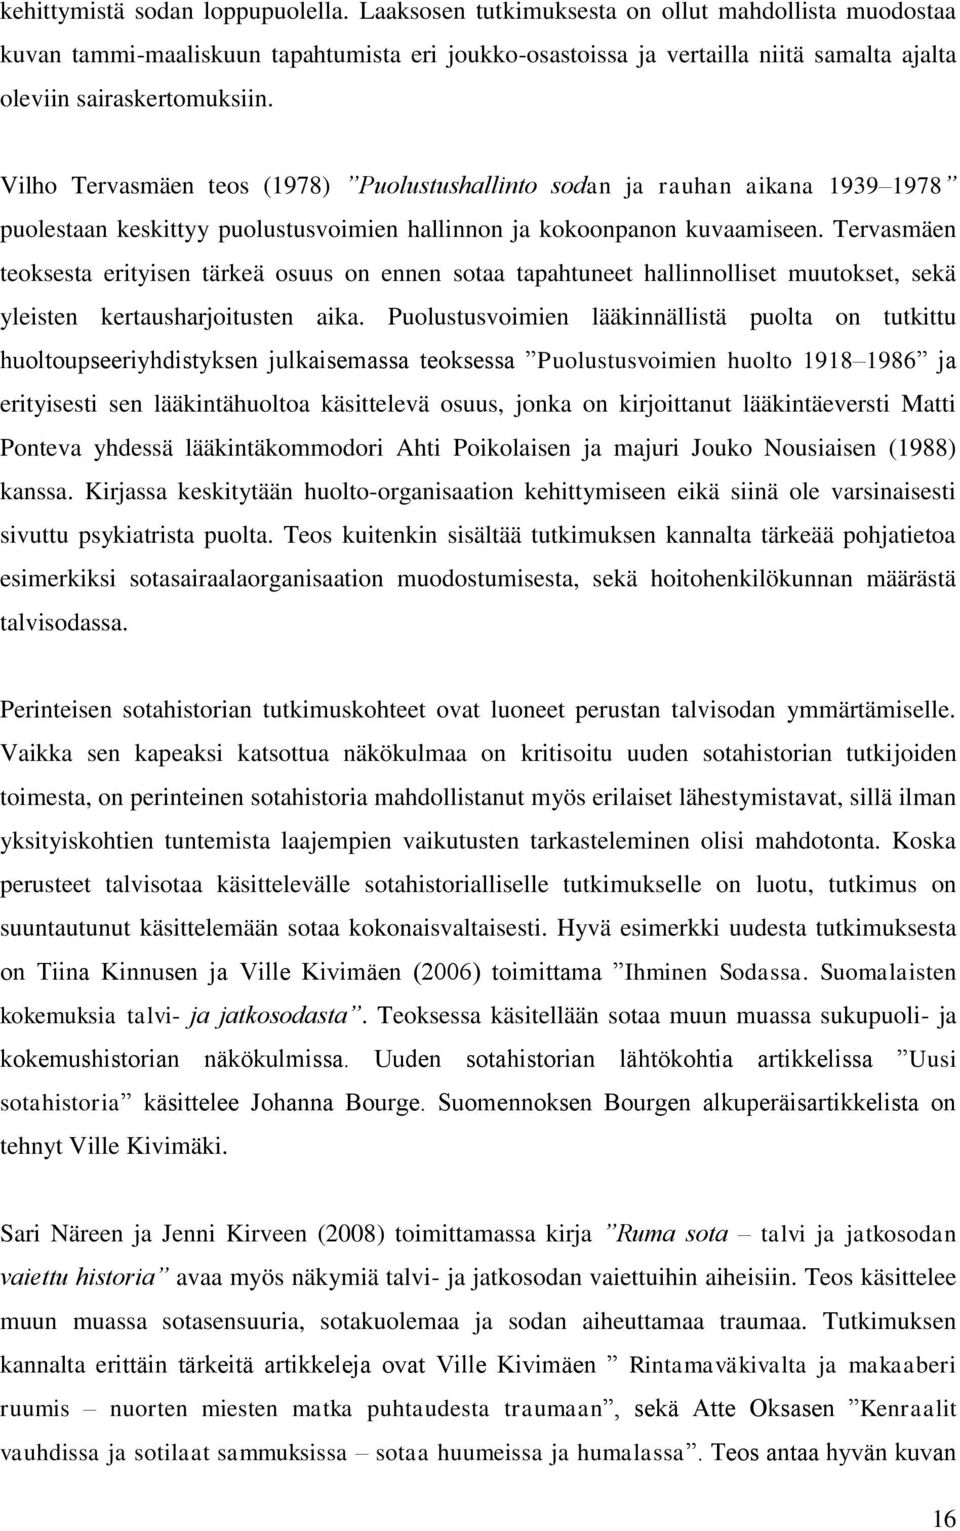 Vilho Tervasmäen teos (1978) Puolustushallinto sodan ja rauhan aikana 1939 1978 puolestaan keskittyy puolustusvoimien hallinnon ja kokoonpanon kuvaamiseen.